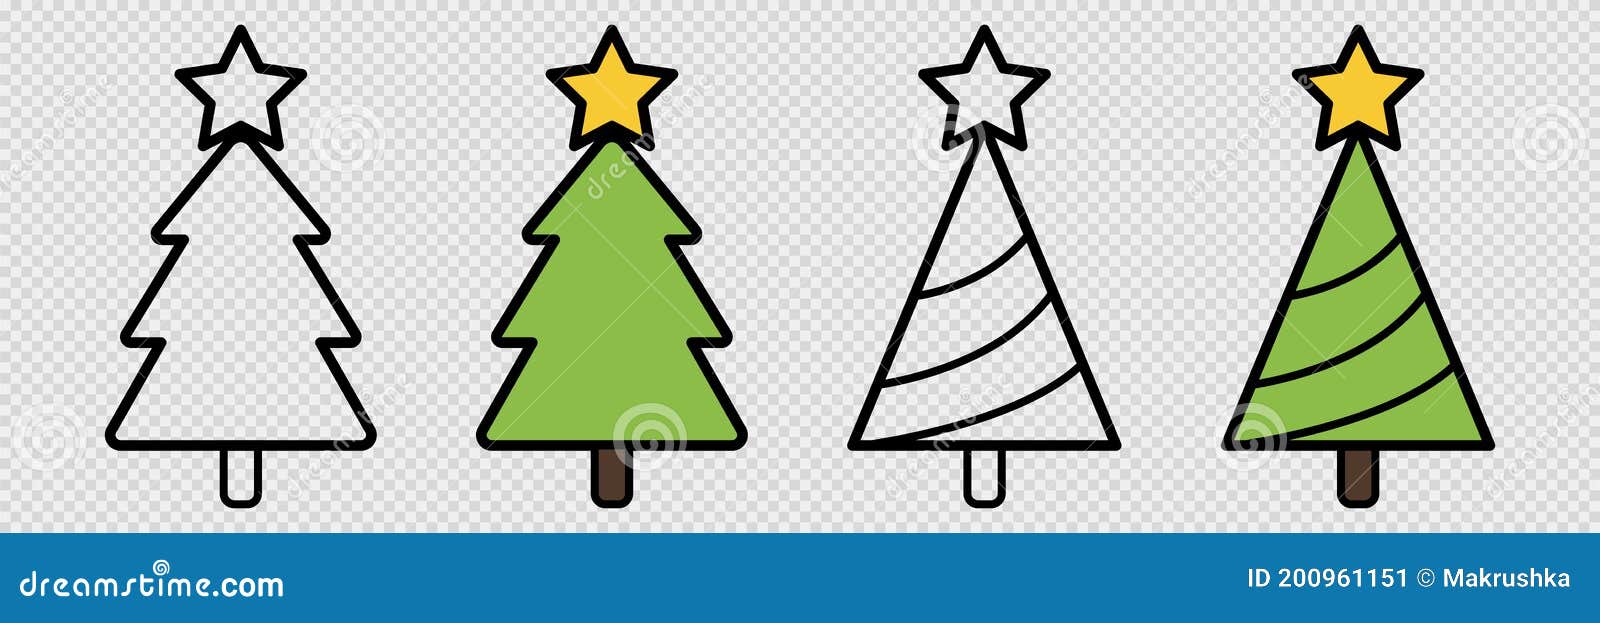 Conjunto De árboles De Navidad. árbol De Dibujos Animados Transparente Y  Relleno. Decoración De Esquema Y Navidad De Color. Símbol Ilustración del  Vector - Ilustración de moderno, nuevo: 200961151